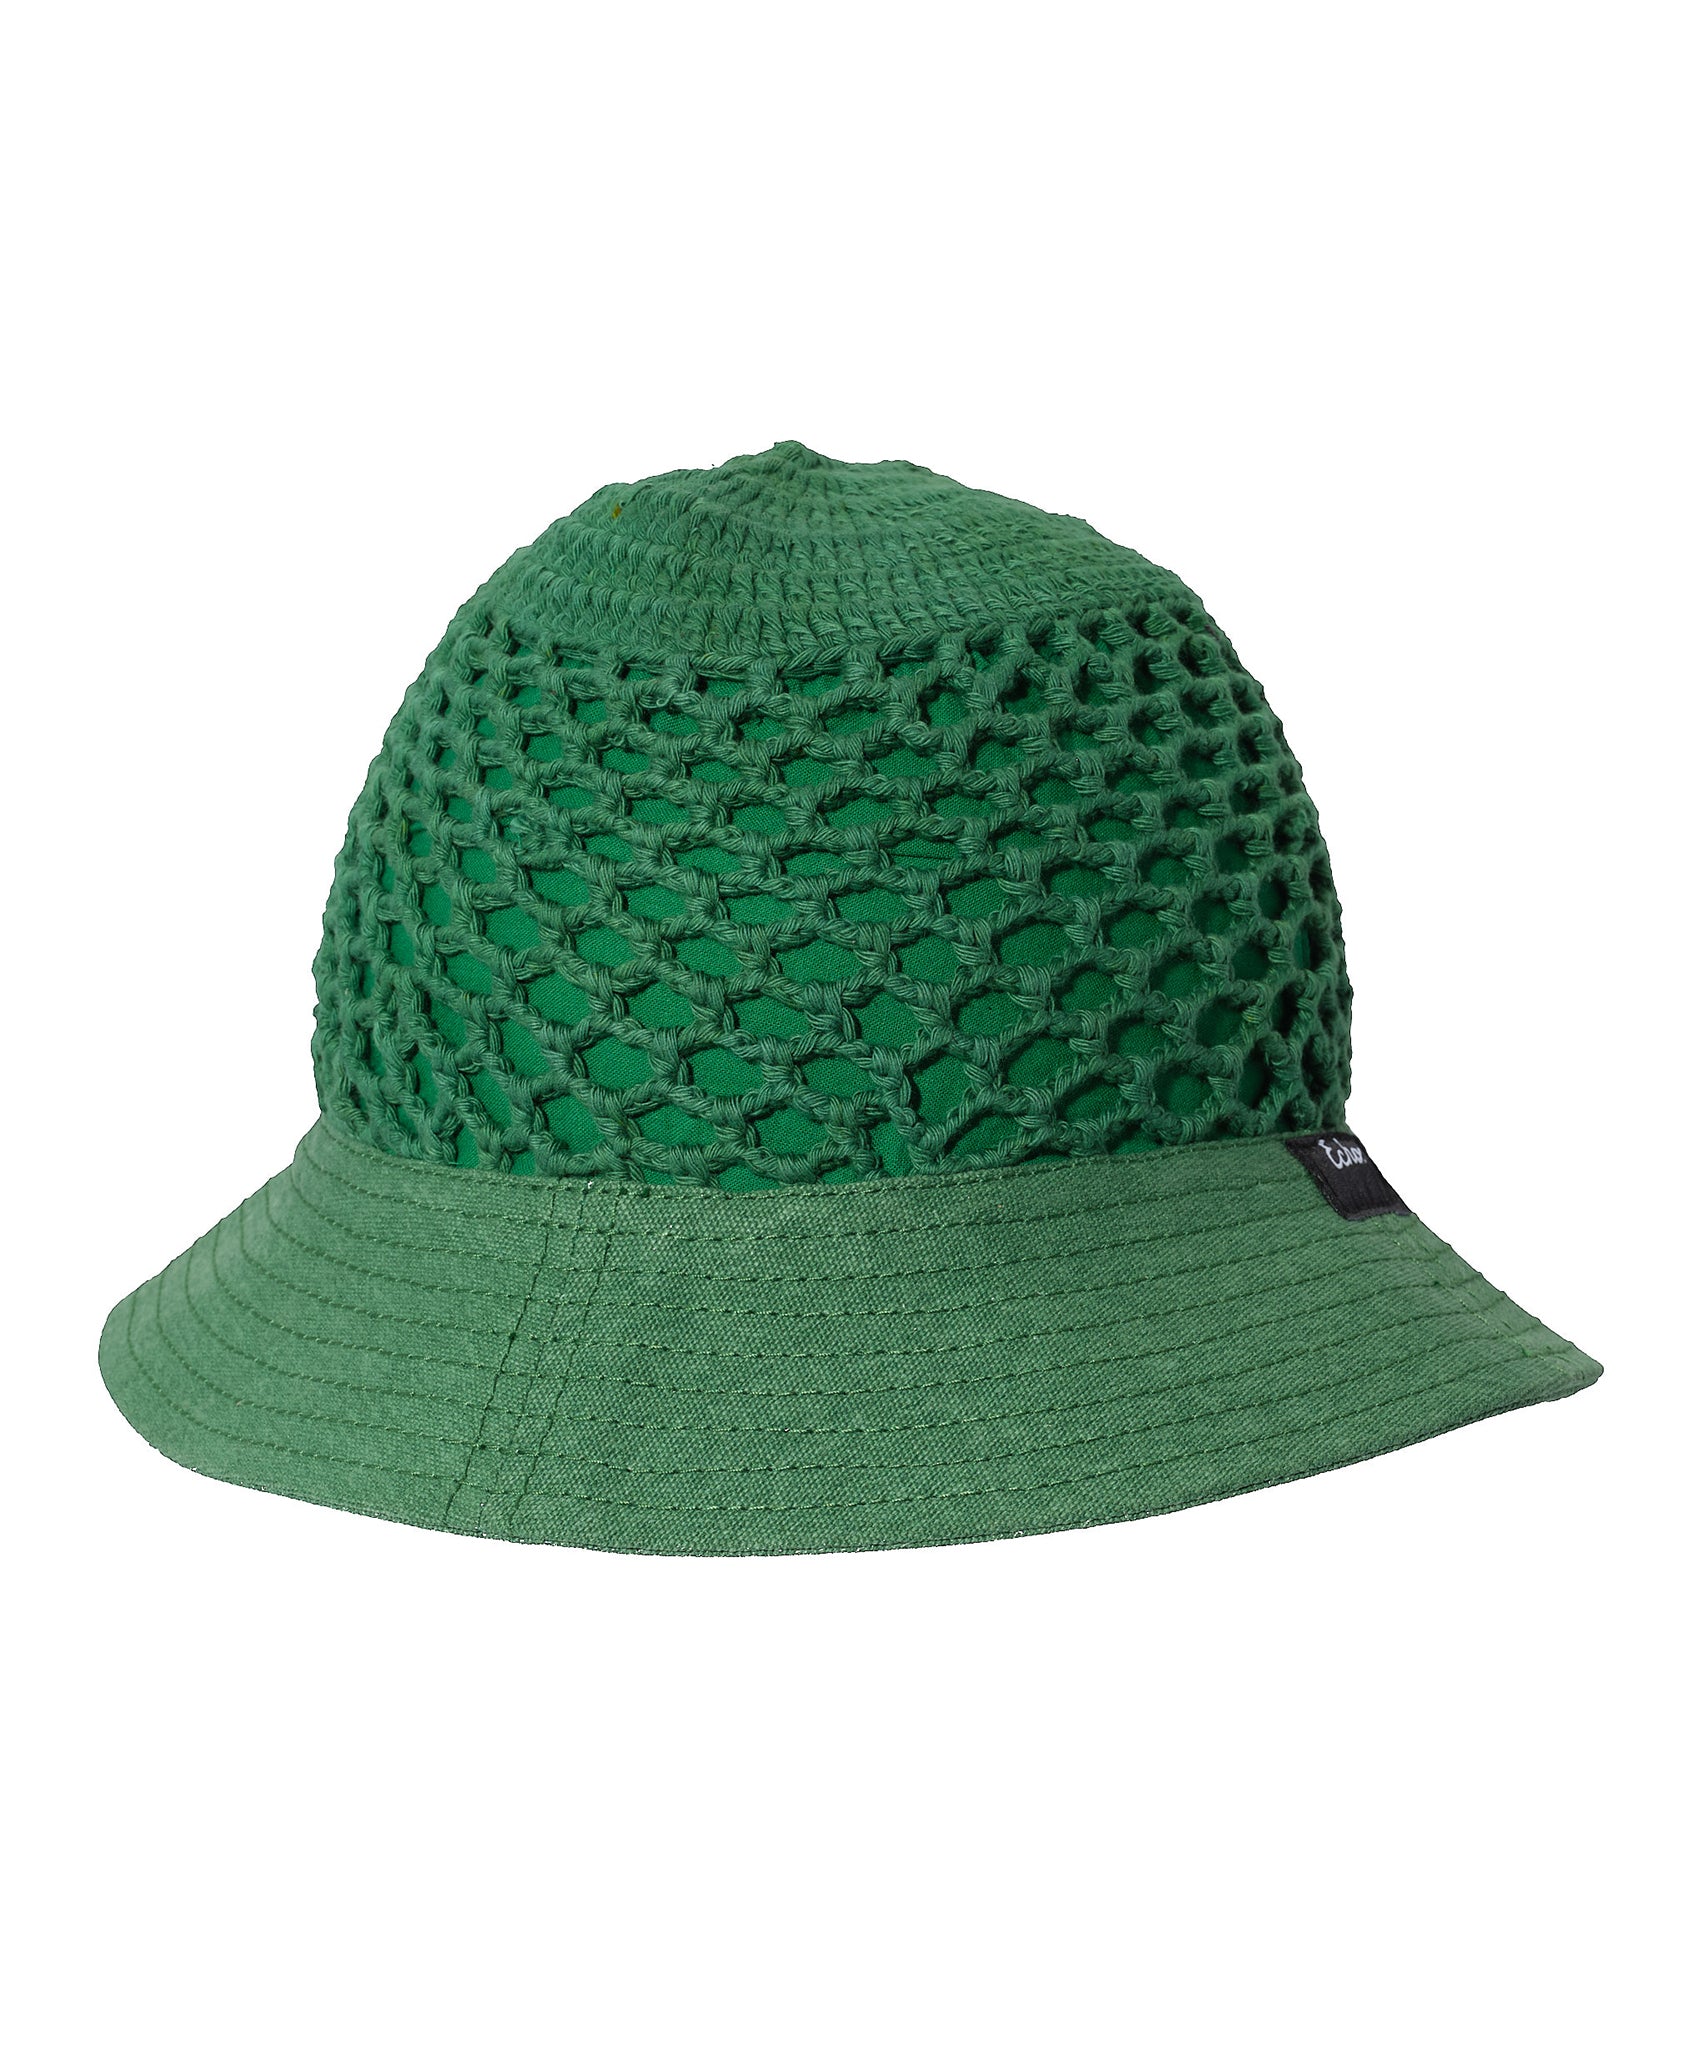 Tambour Bucket Hat in color Amazon Green